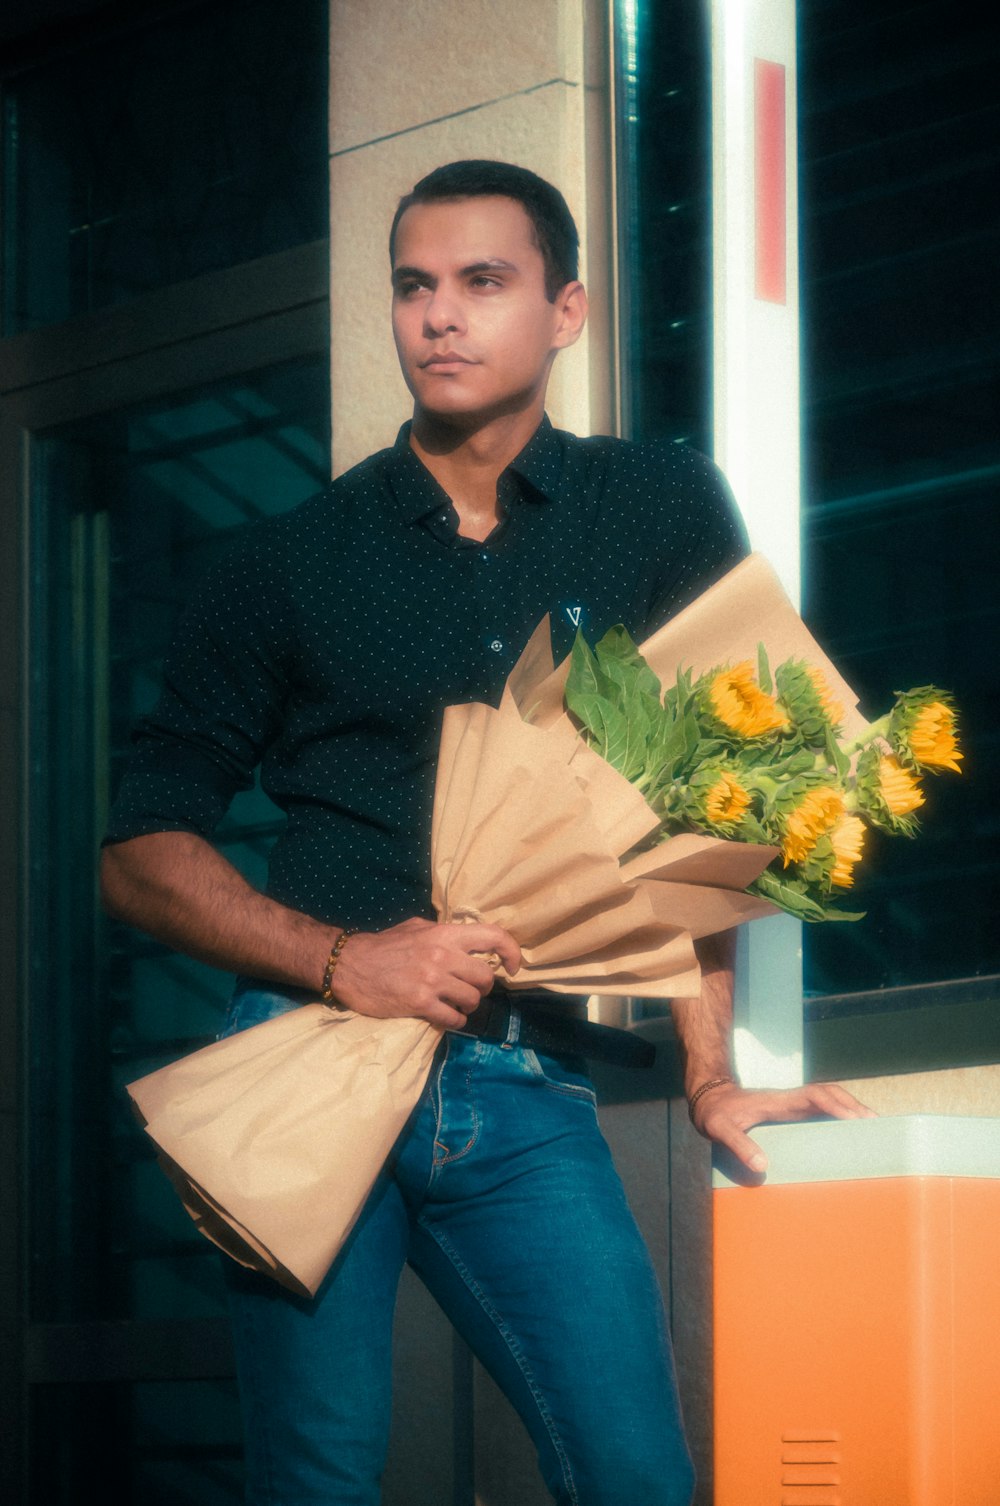 Mann im braunen Hemd mit Blumenstrauß